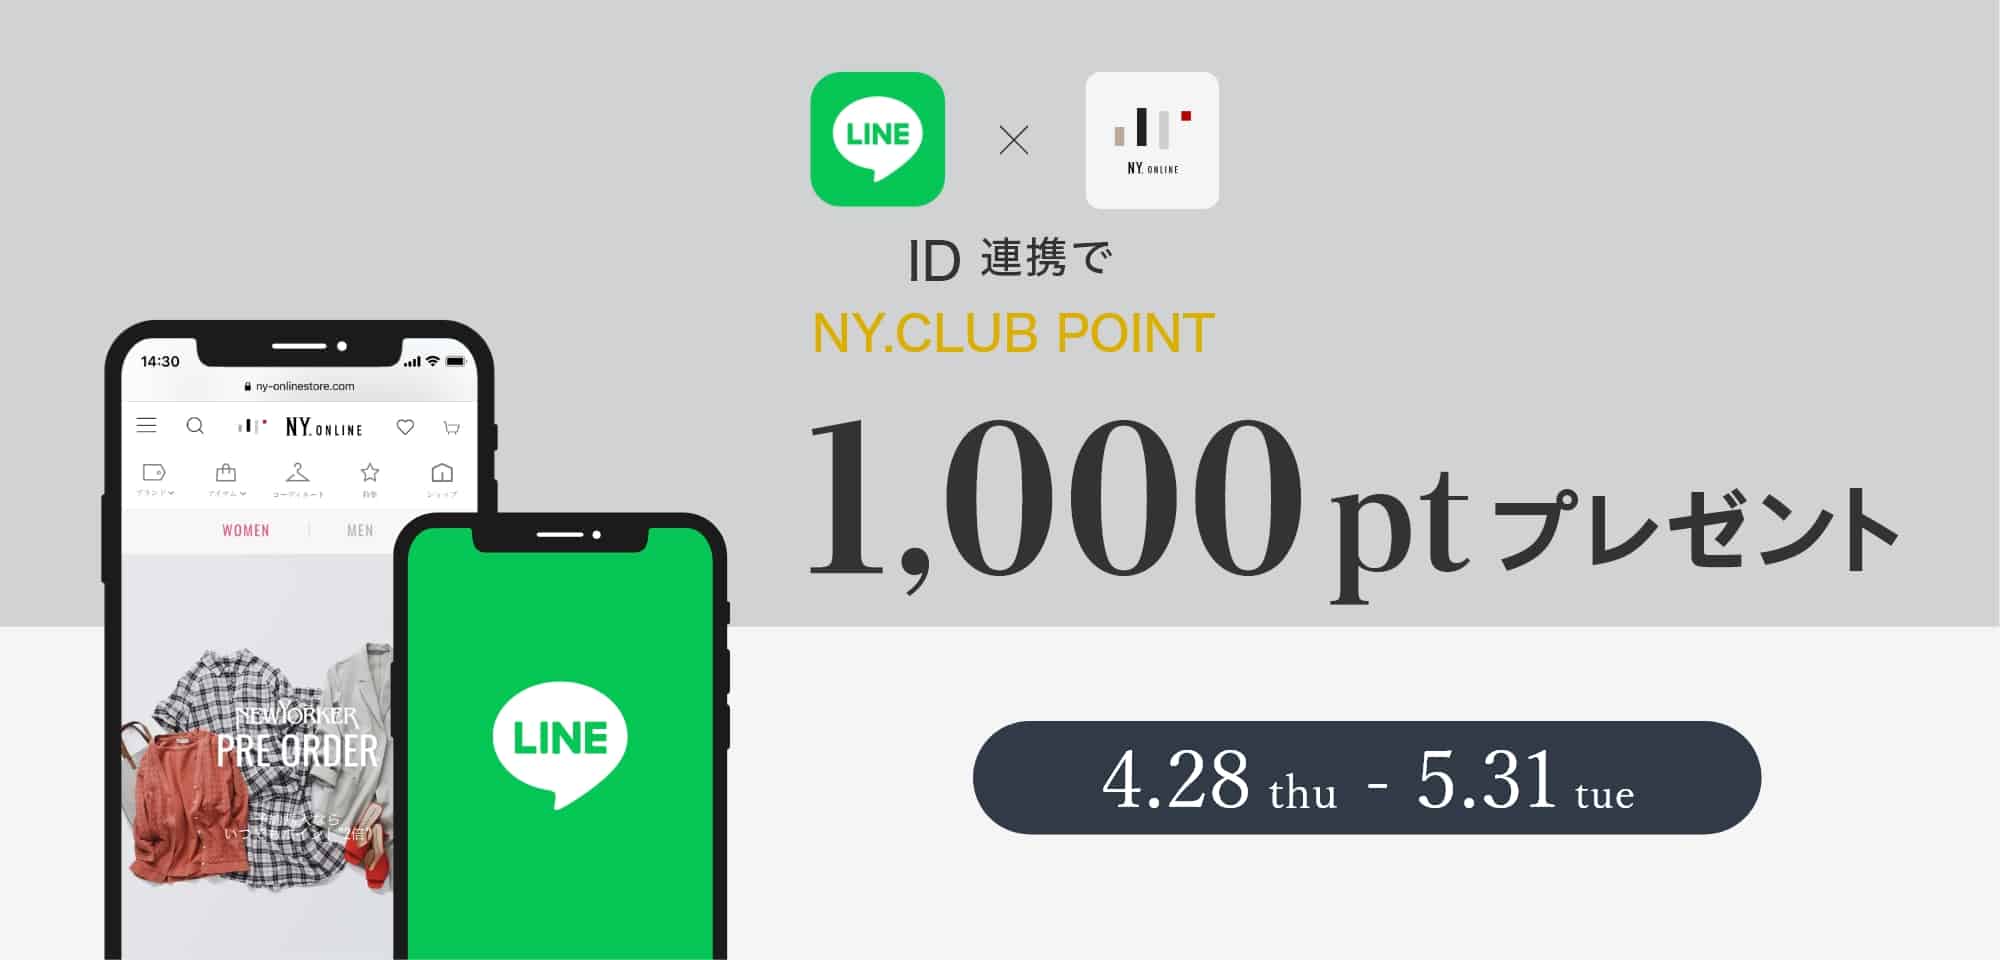 LINE ID連携キャンペーン